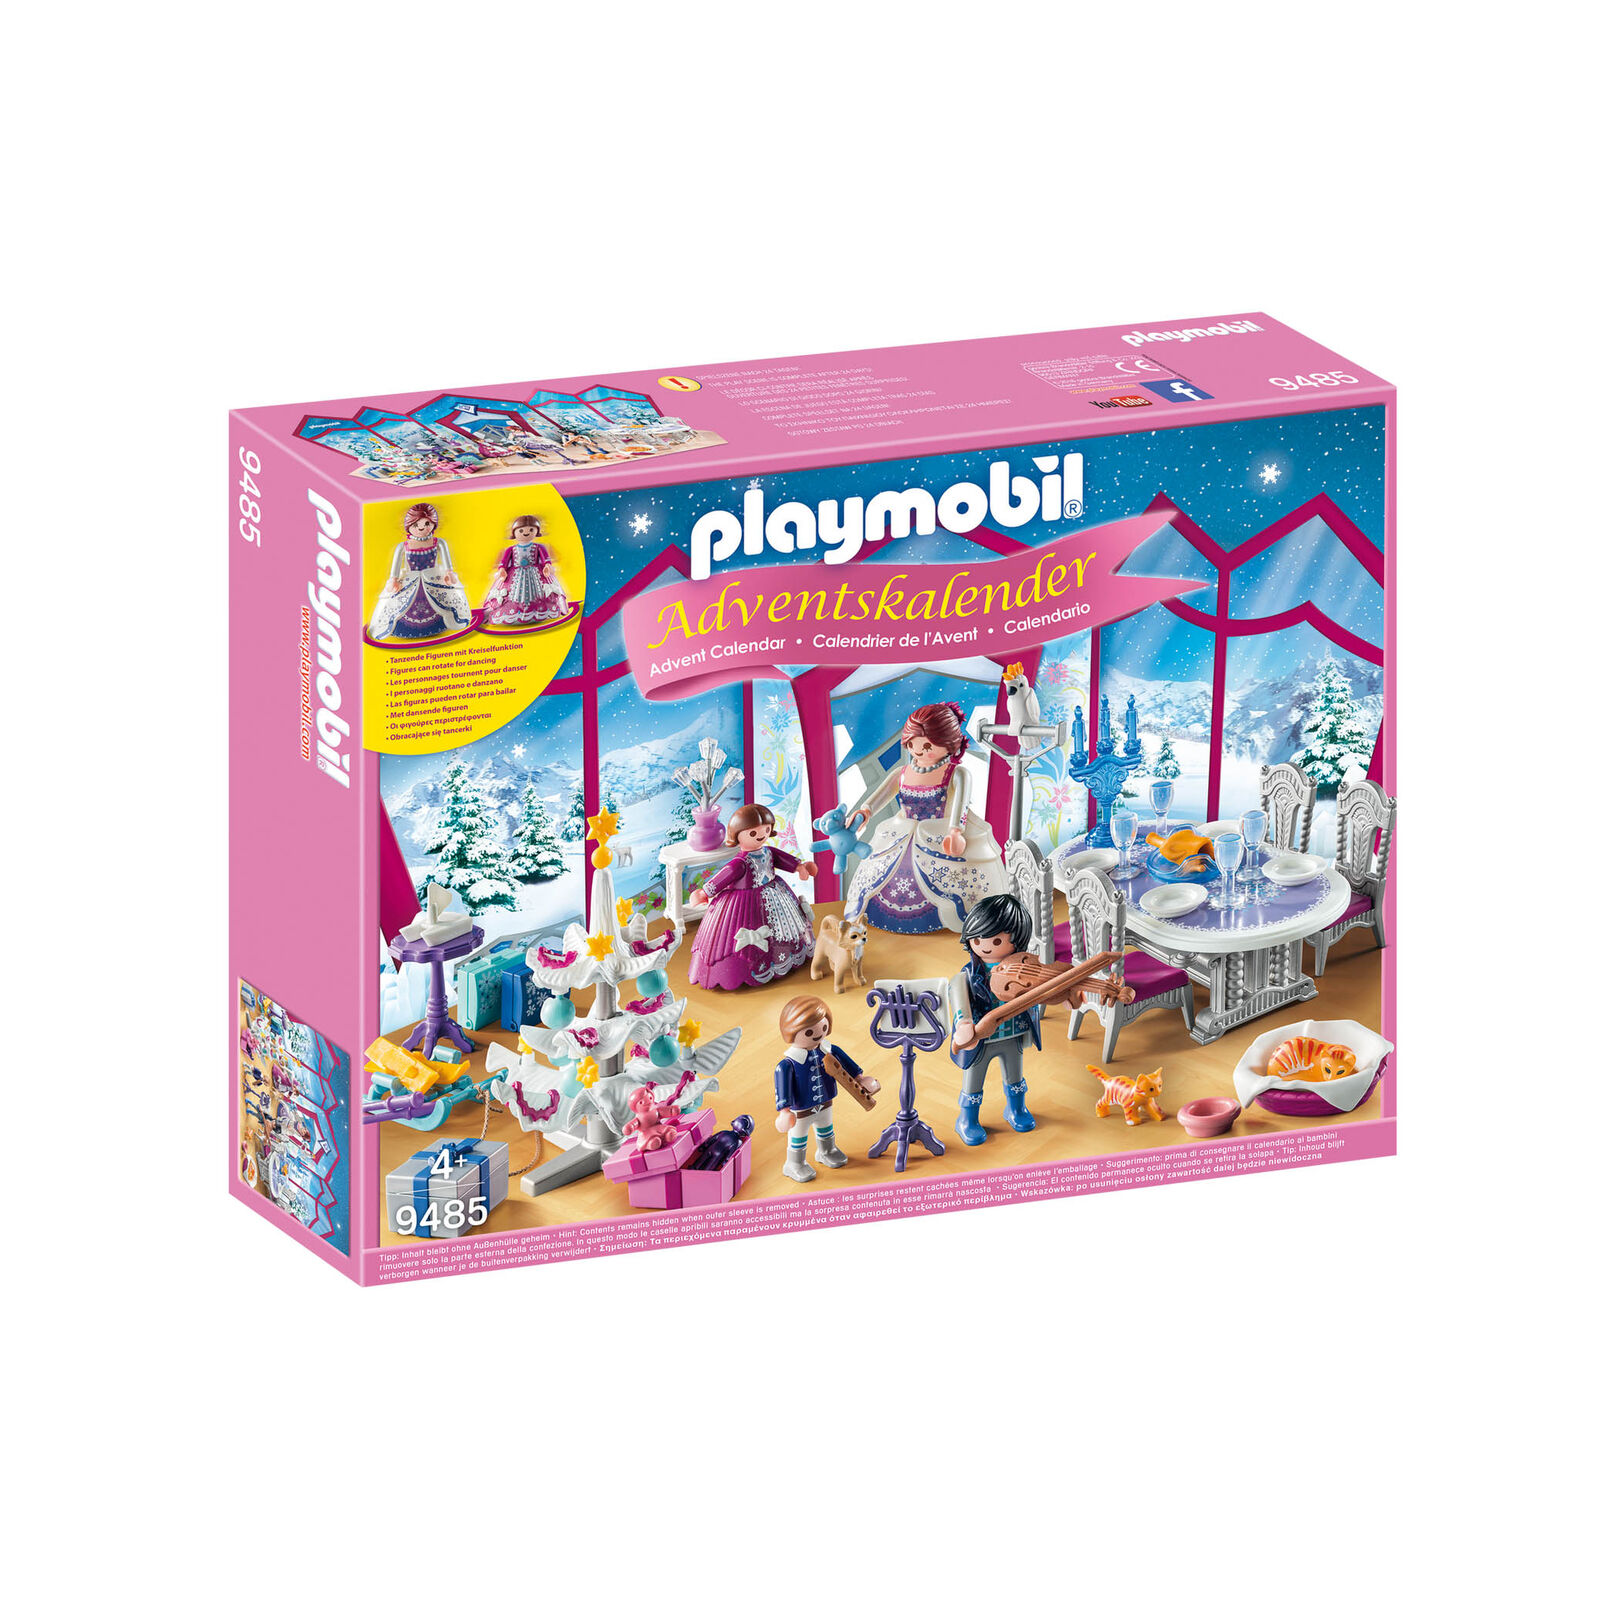 Playmobil 9485 Calendario adviento Baile de navidad en salón cristal ¡Navidad!